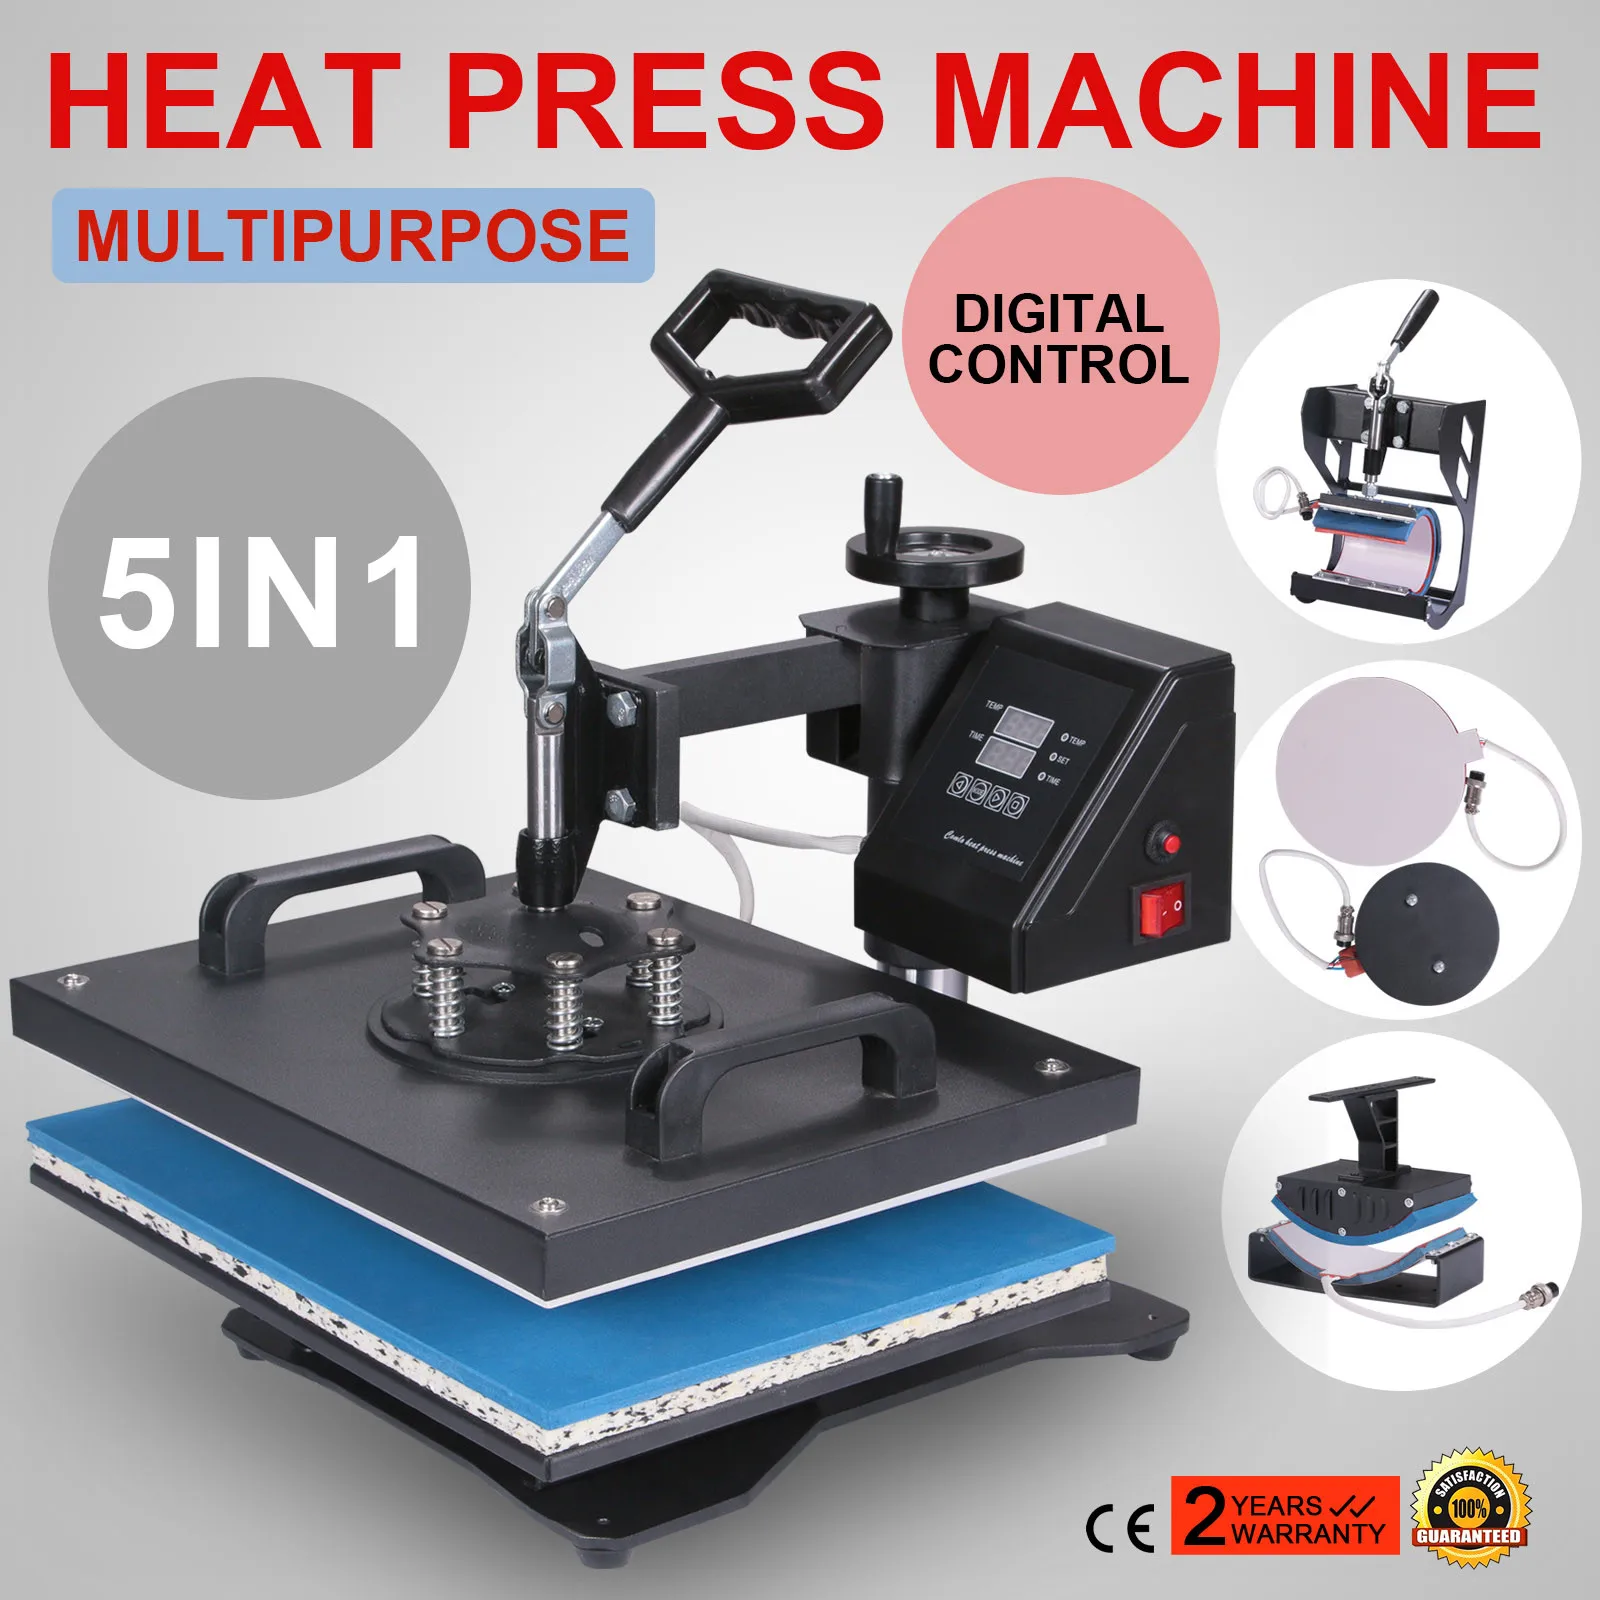 6 in 1 Heat Press Machine Transfer 15"x15" Free T-shirt Alarm Hat Plate 